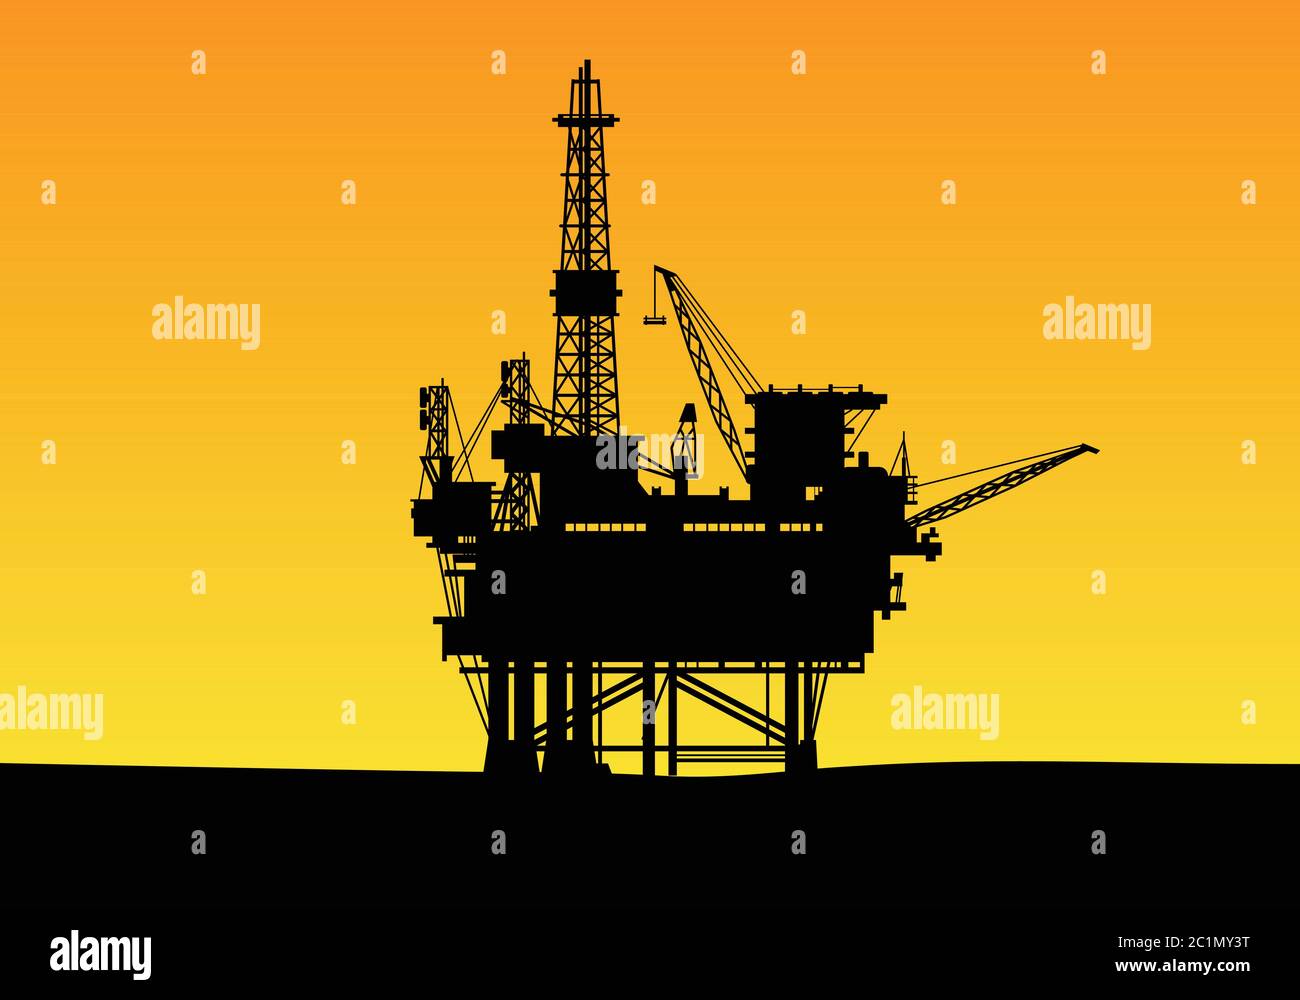 silhouette d'une construction de forage pétrolier offshore avec des tours hautes et une grue. Adapté au modèle de conception de fond de la société de gaz et d'énergie. Illustration de Vecteur